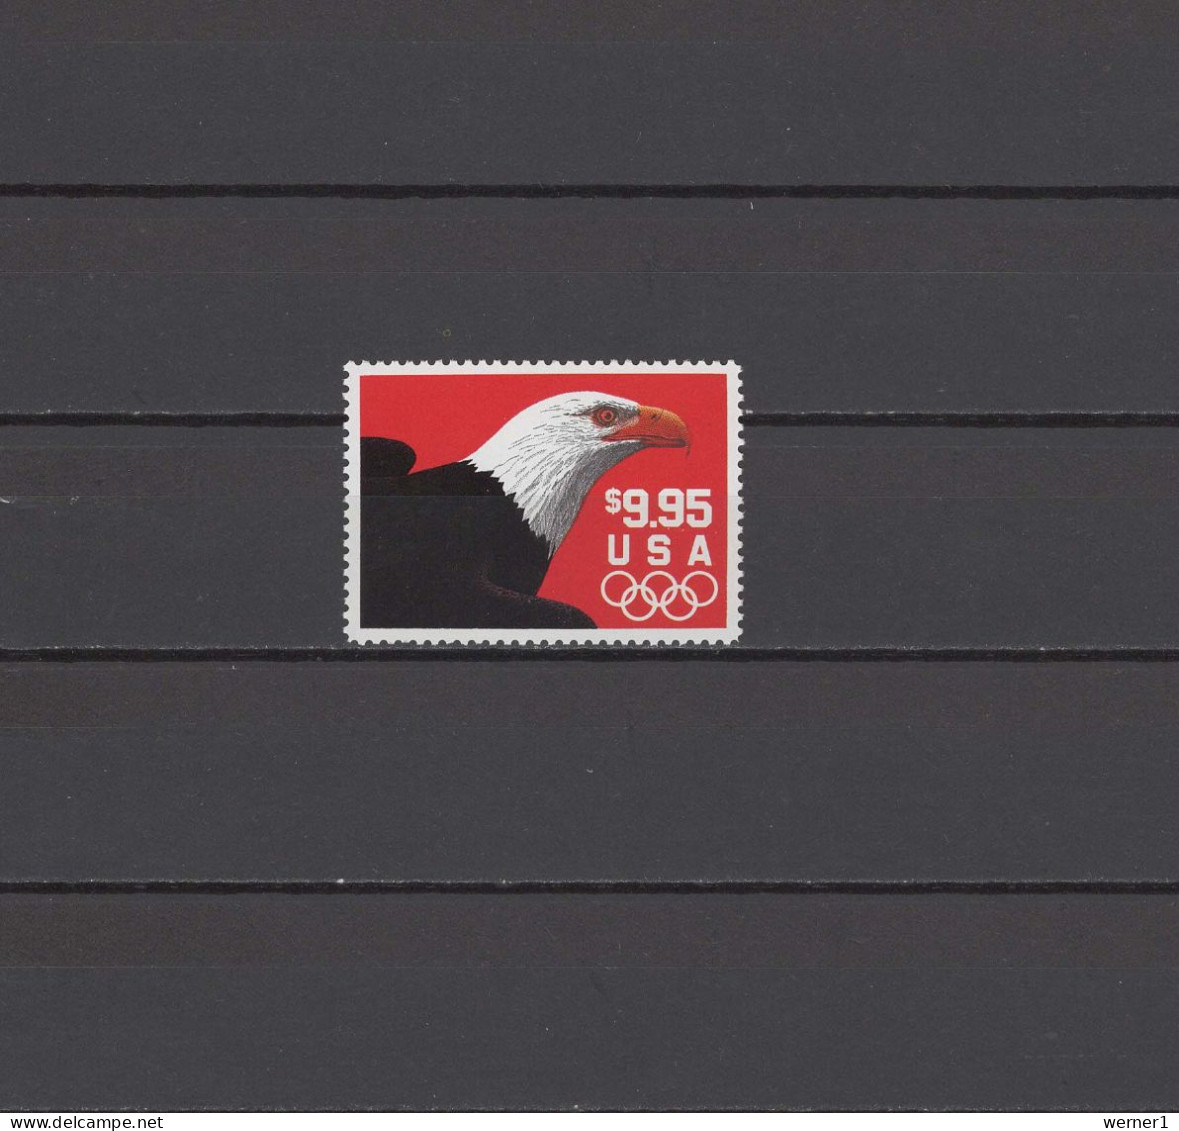 USA 1991 Olympic Games, Eagle 9.95$ Stamp MNH - Verano 1992: Barcelona